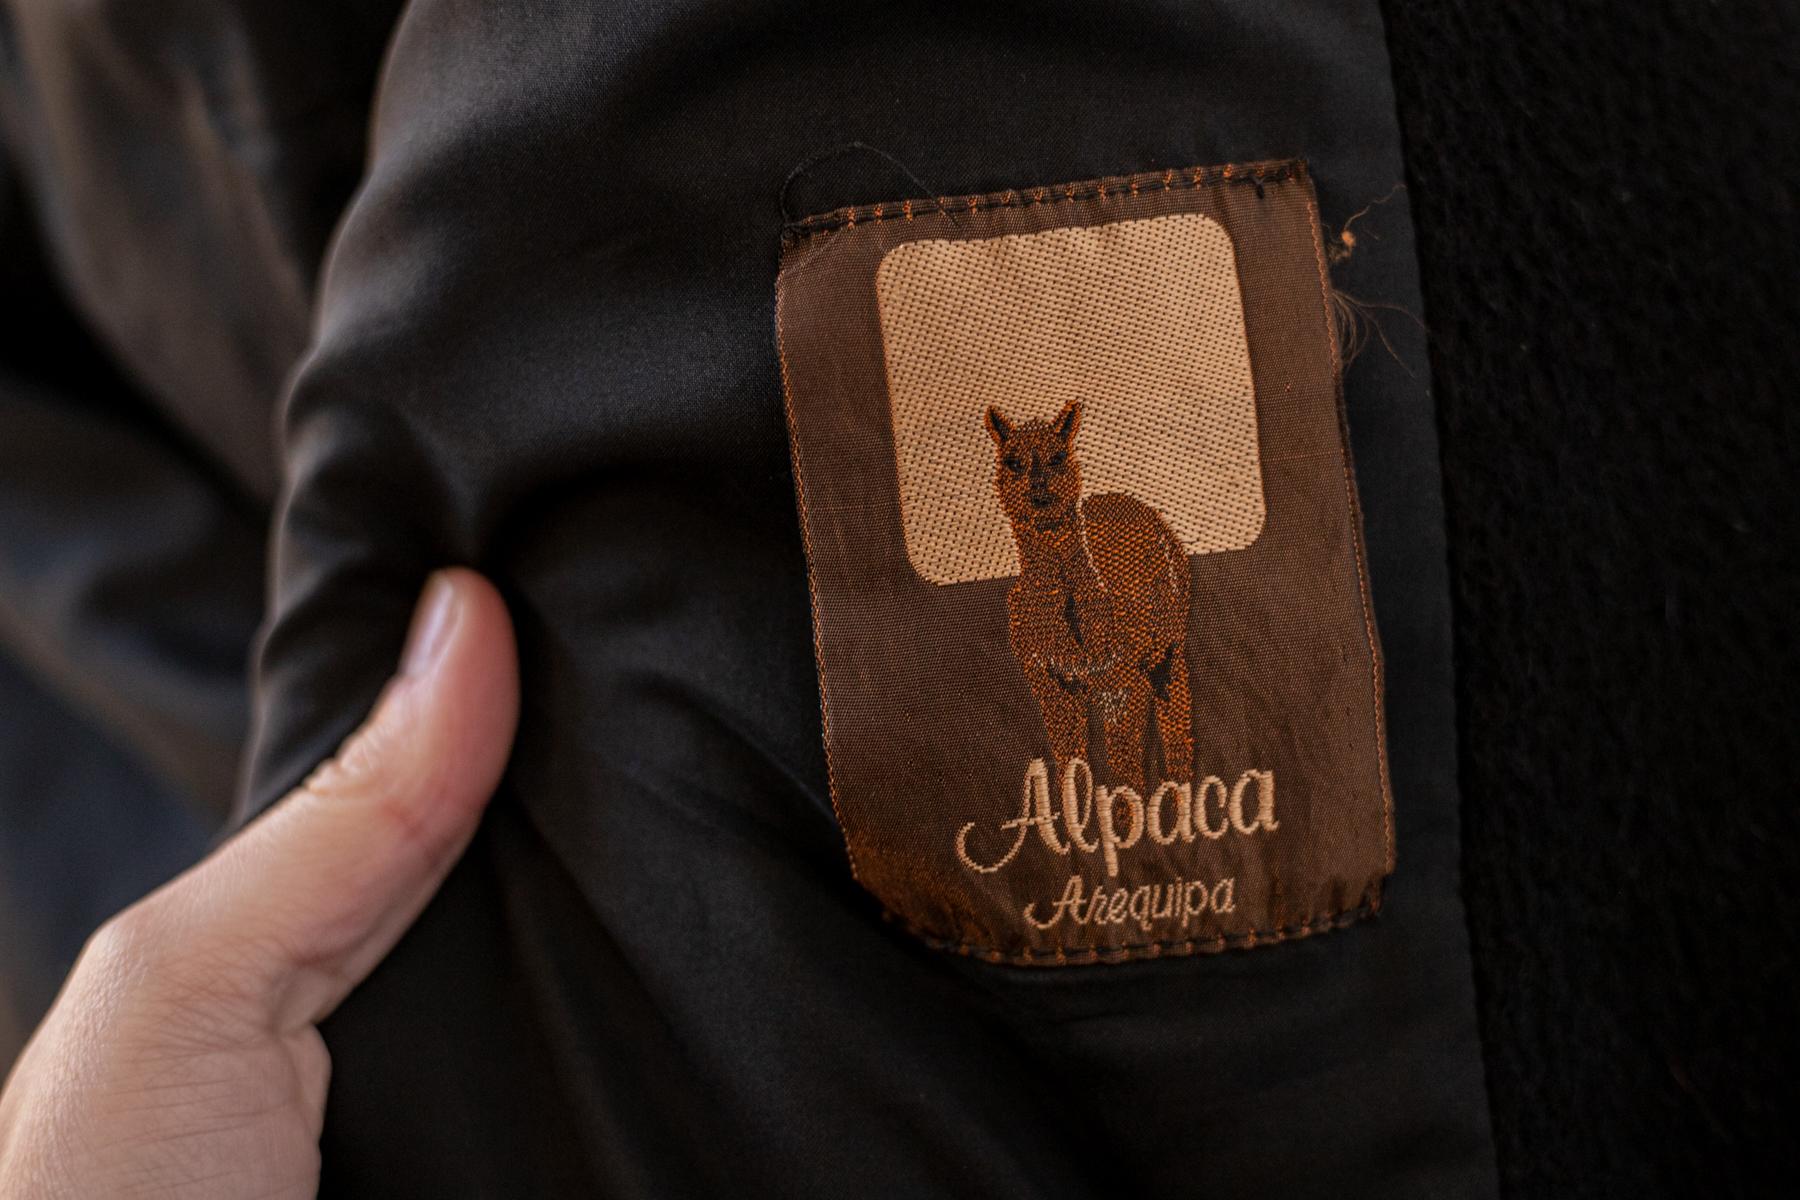 Magnifique manteau vintage en laine d'alpaga des années 1990, avec son étiquette d'origine.
Le manteau présente une silhouette droite et surdimensionnée avec des manches longues. Entièrement en laine d'Alpaga, qui est très douce et chaude.
Il est